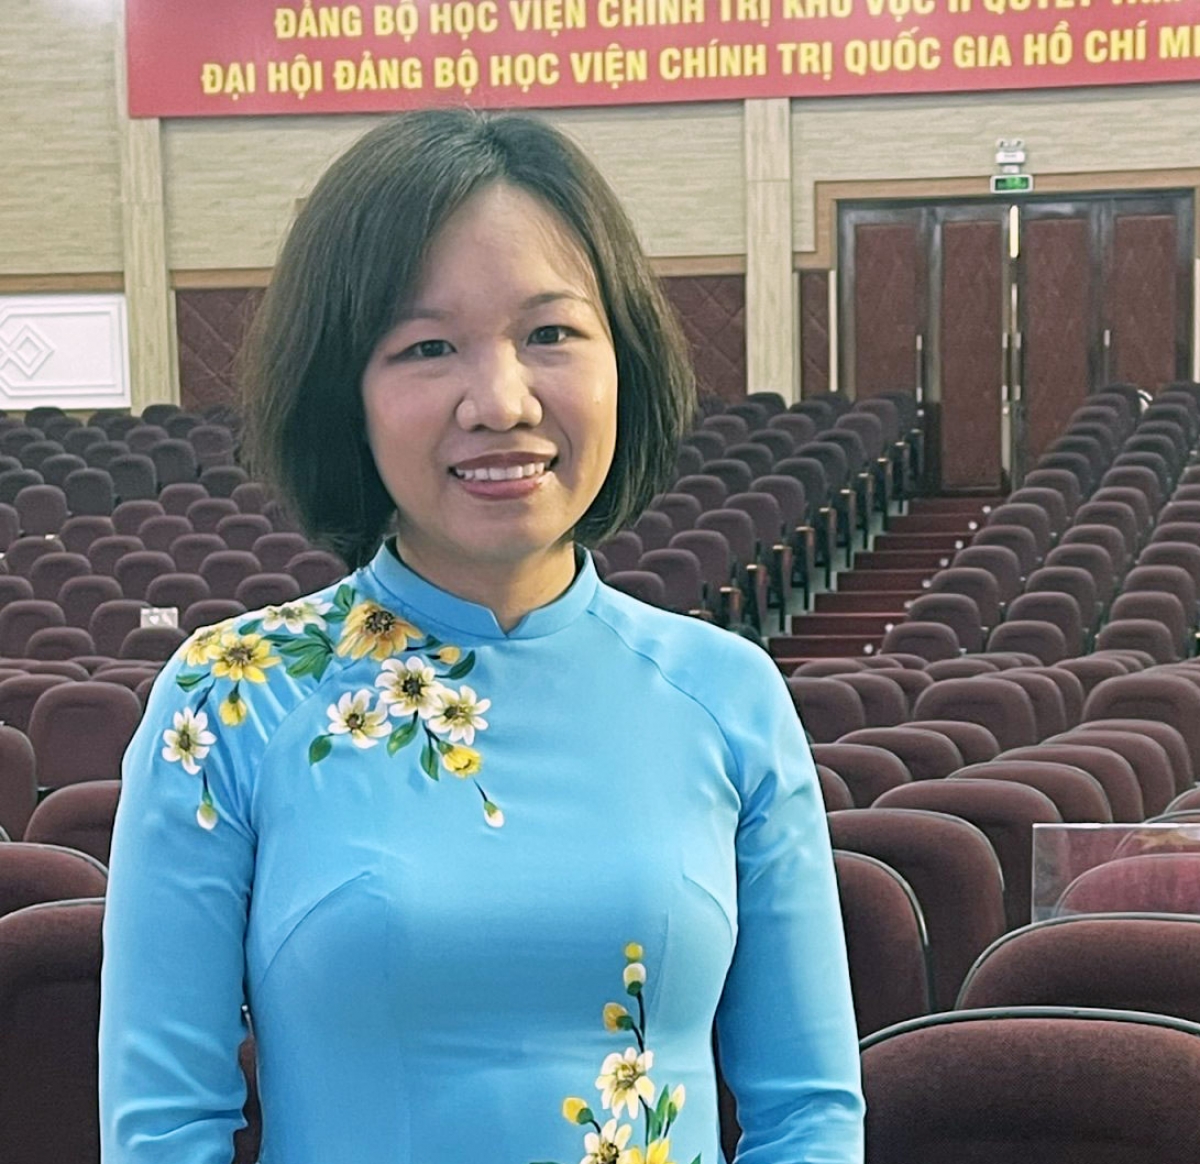 Tiến sĩ Nguyễn Thị Trâm - Trưởng Khoa Xây dựng Đảng (Học viện Chính trị khu vực II).